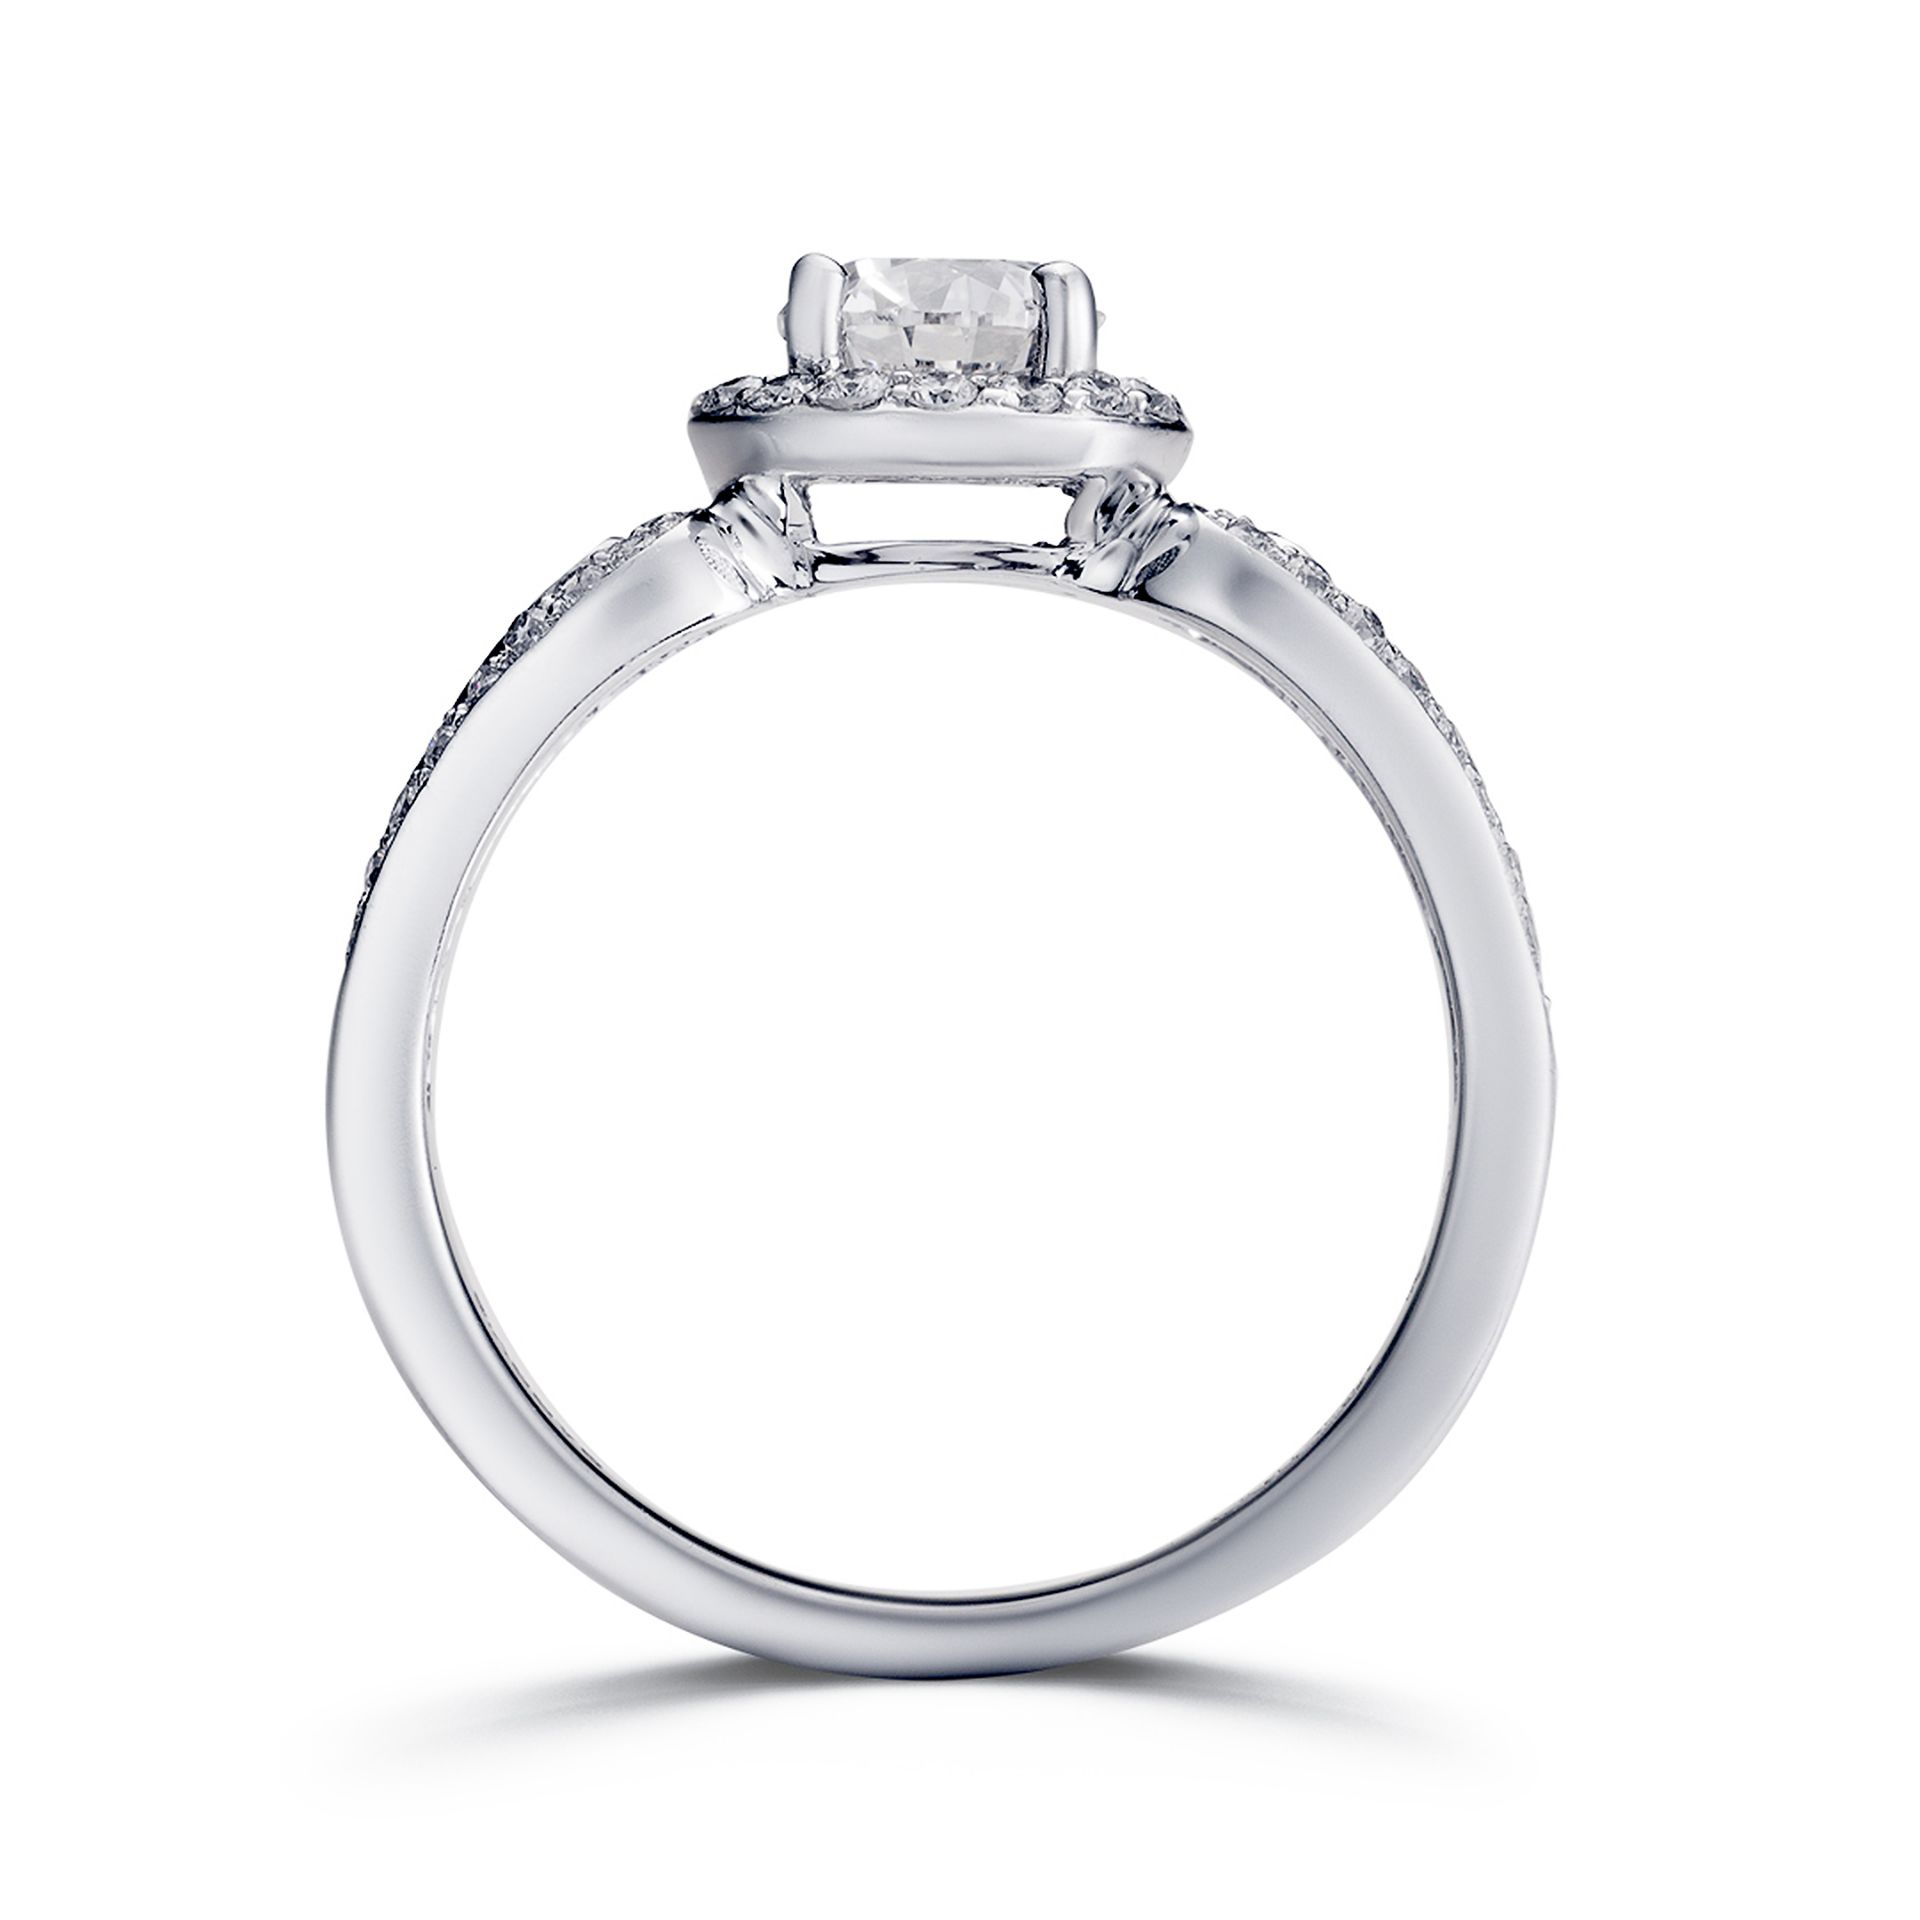 Nickelfreier Verlobungsring aus Gold und Diamanten | Nickel Free Gold and Diamond Engagement Ring - Image 3 of 3